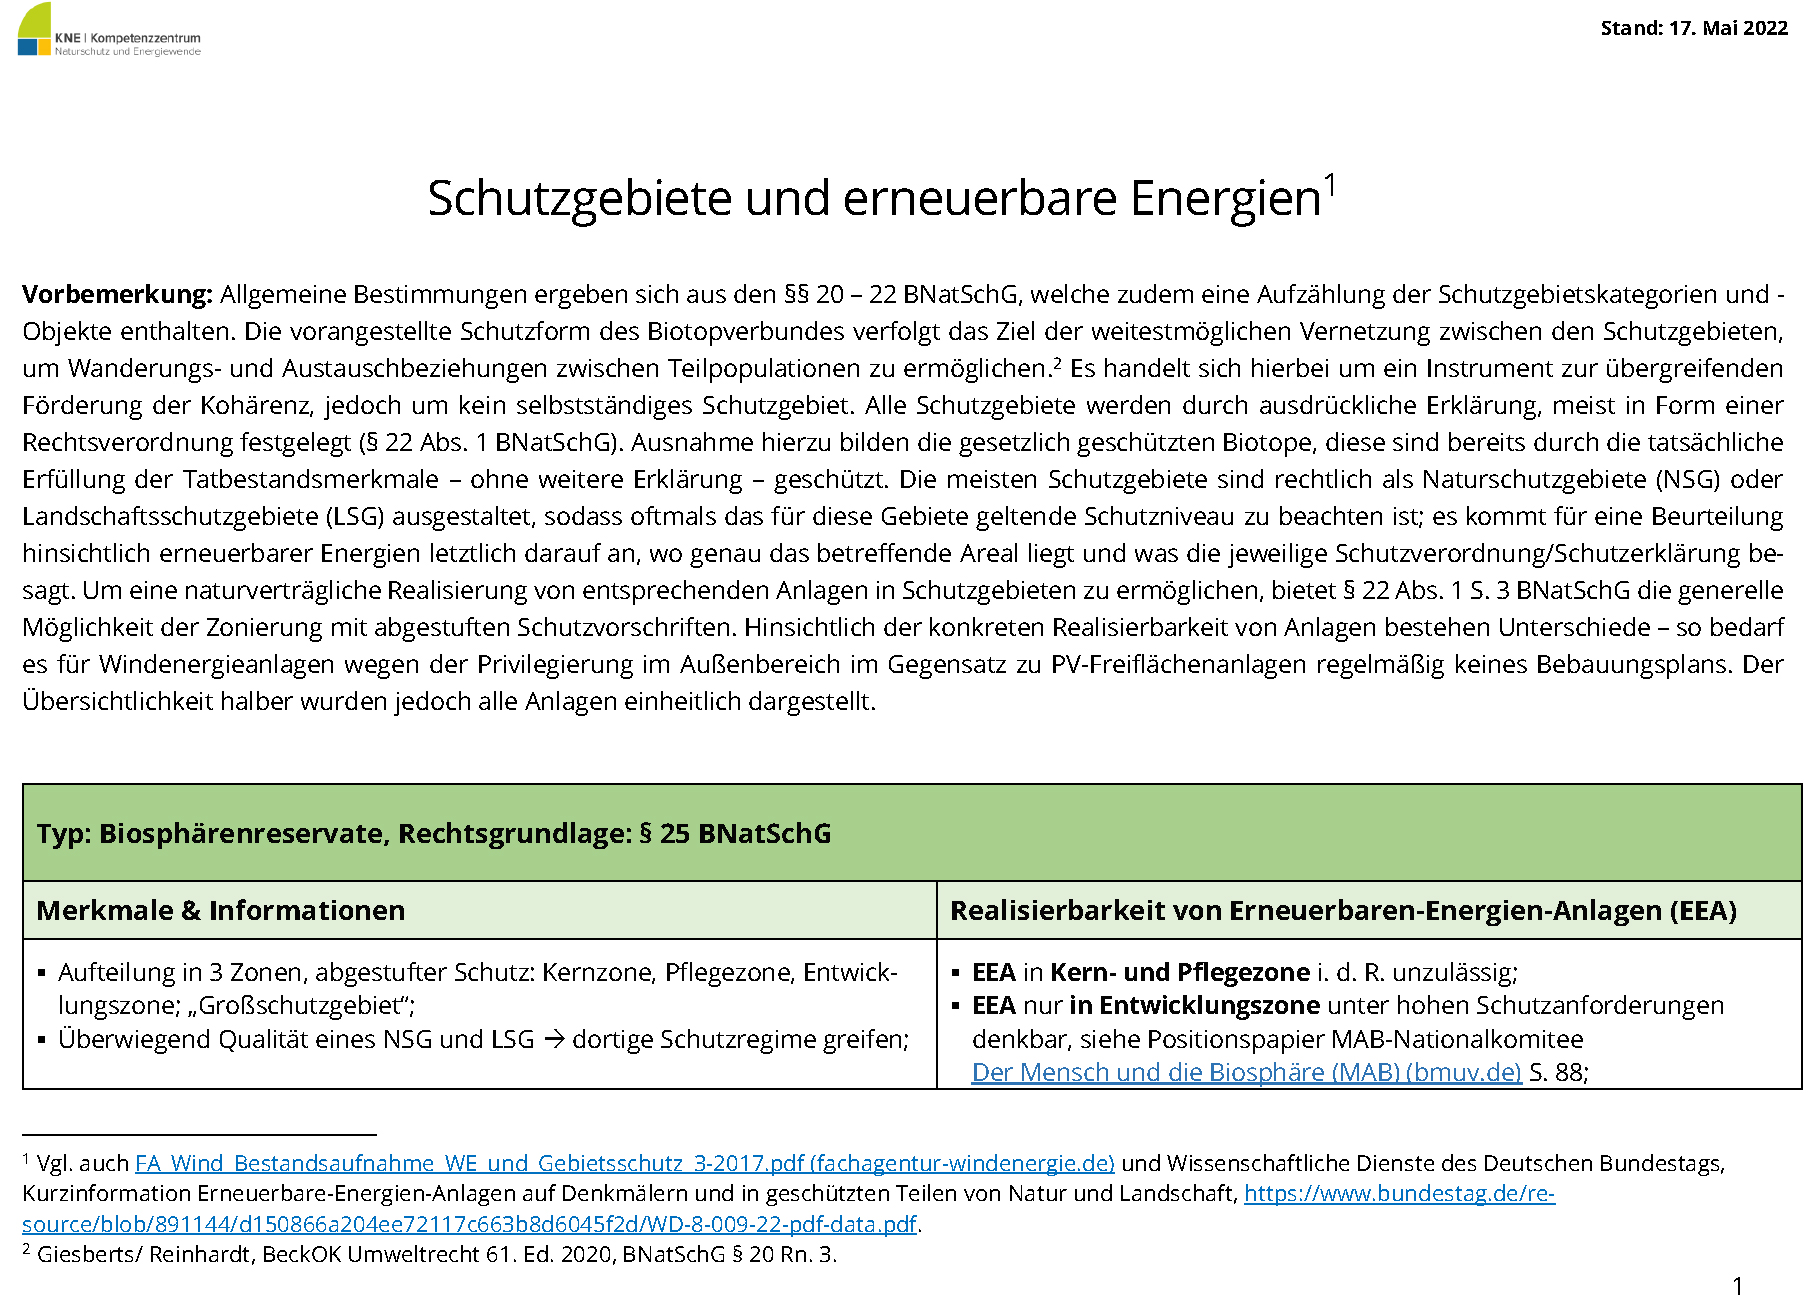 Titelblatt KNE-Uebersicht_Schutzgebiete_erneuerbare_Energien